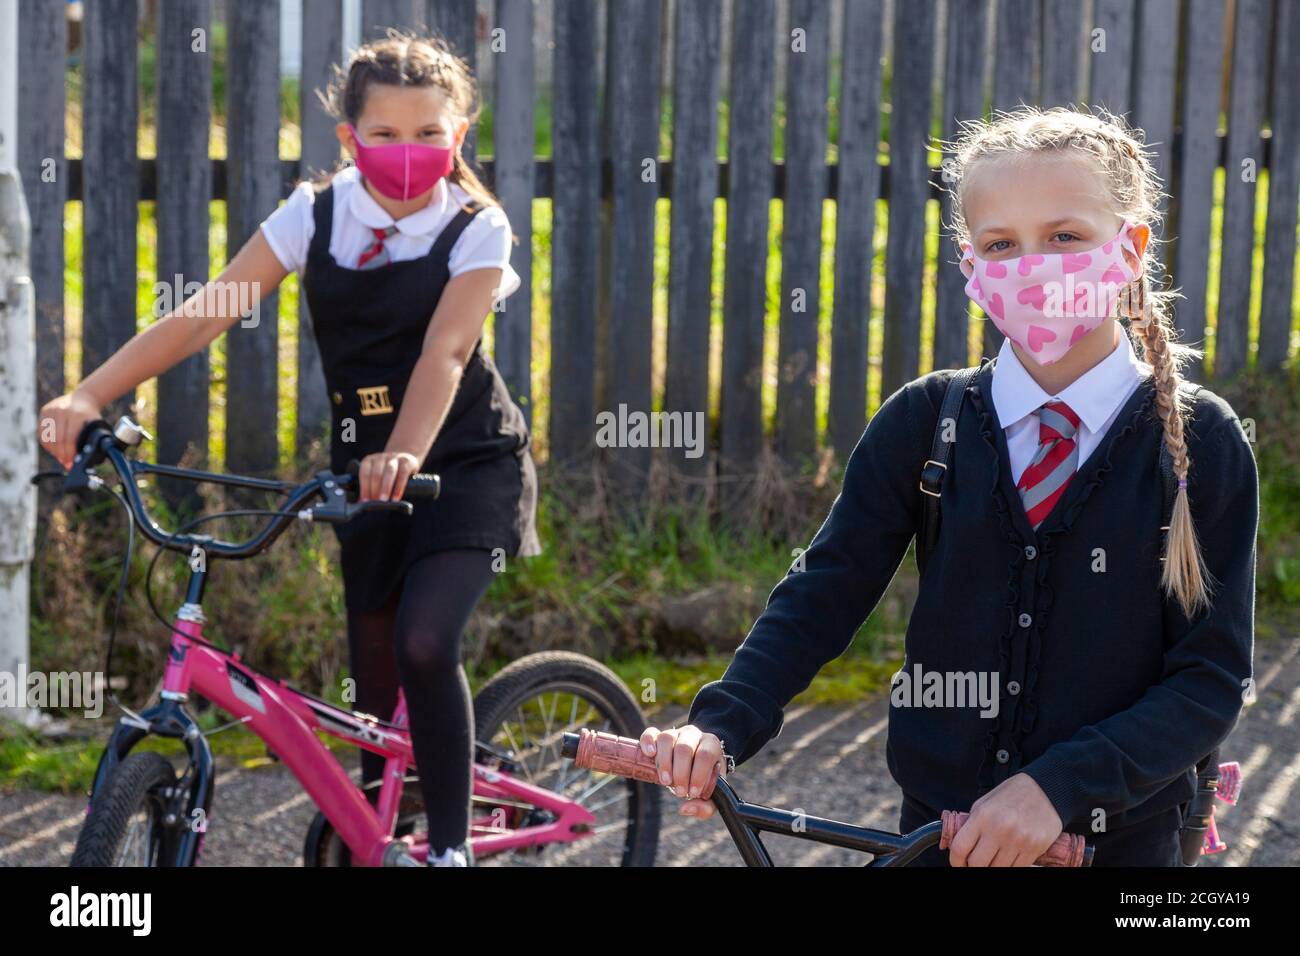 Zwei zehnjährige Schulfreunde in Schuluniformen sitzen auf Fahrrädern und tragen Gesichtsmasken. Stockfoto